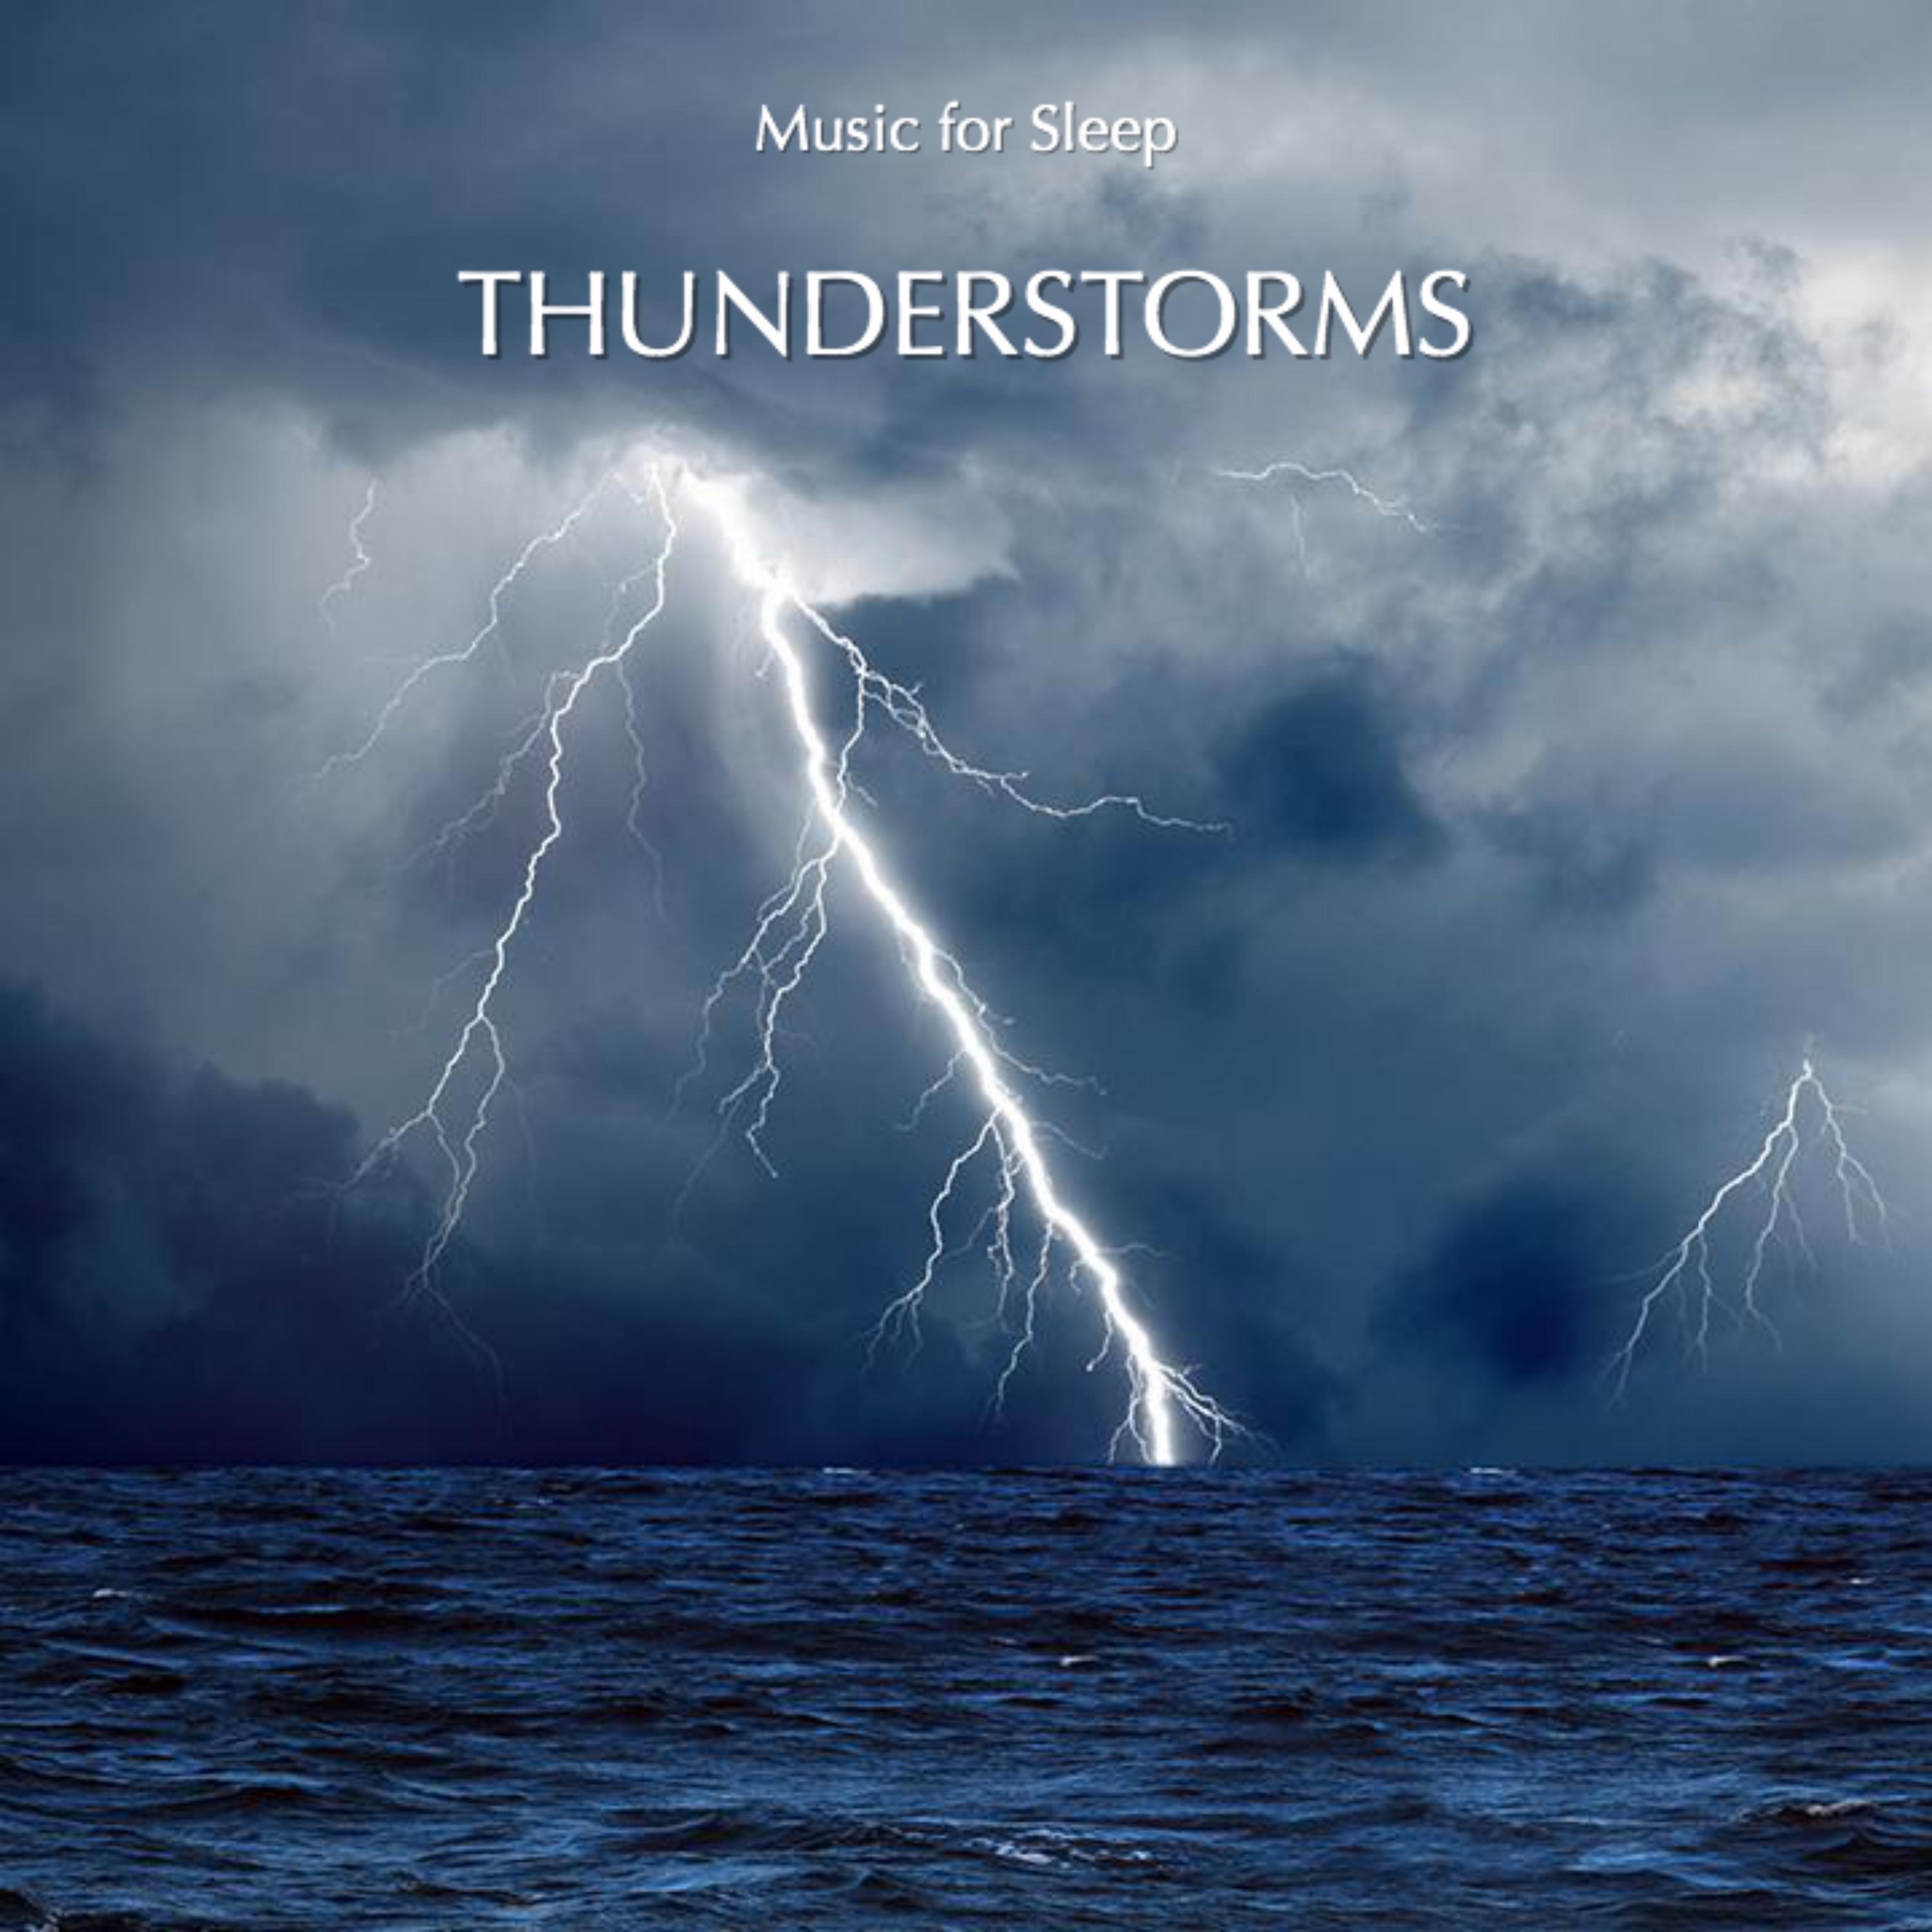 Music for Sleep Thunderstorm